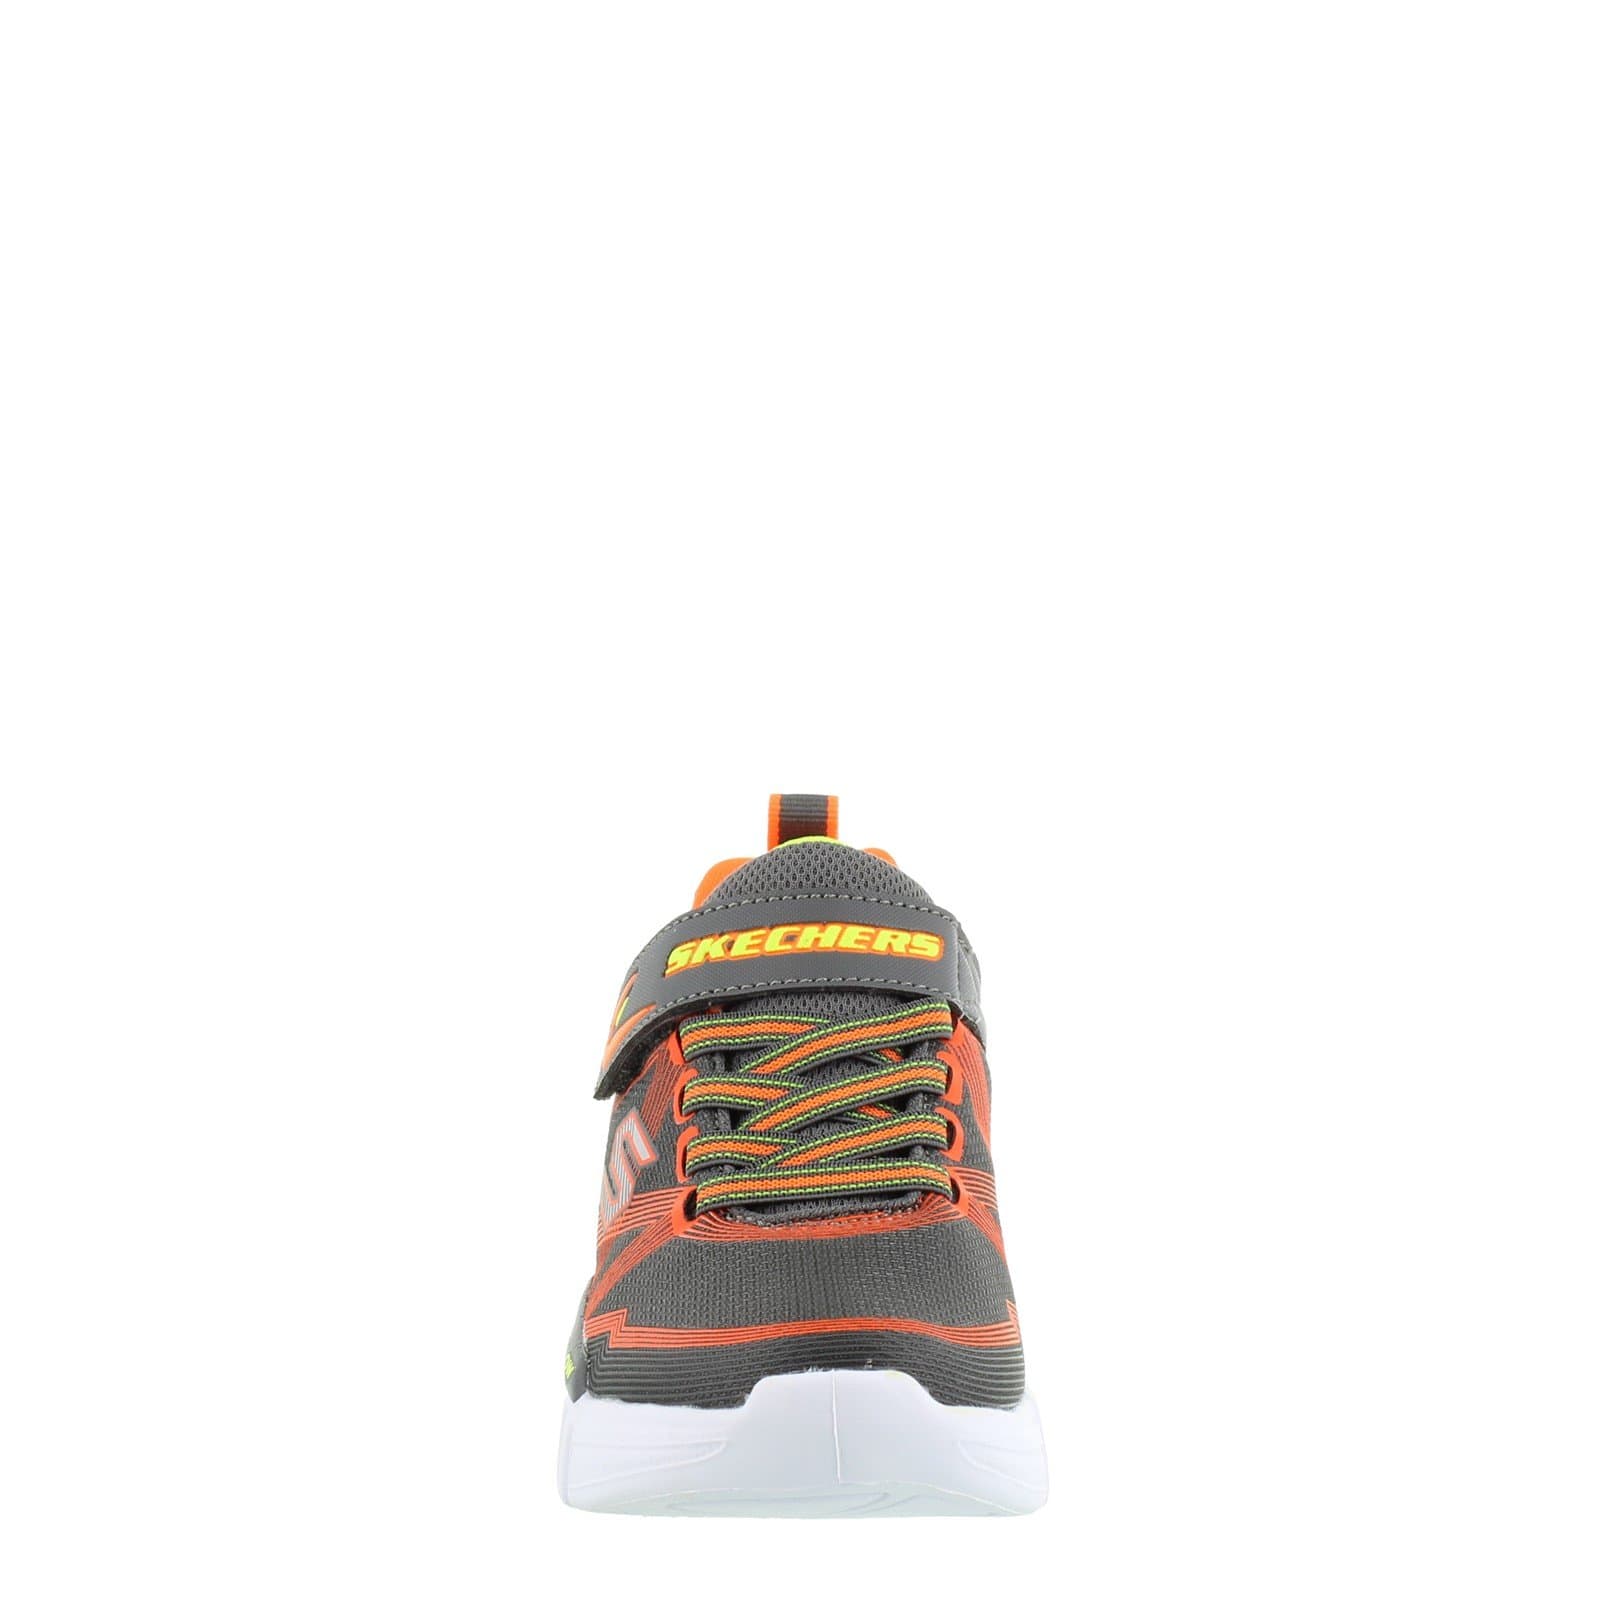 SKECHERS Kids Shoes 30 / Grey / Orange S Lights Flex - Glow Sneaker